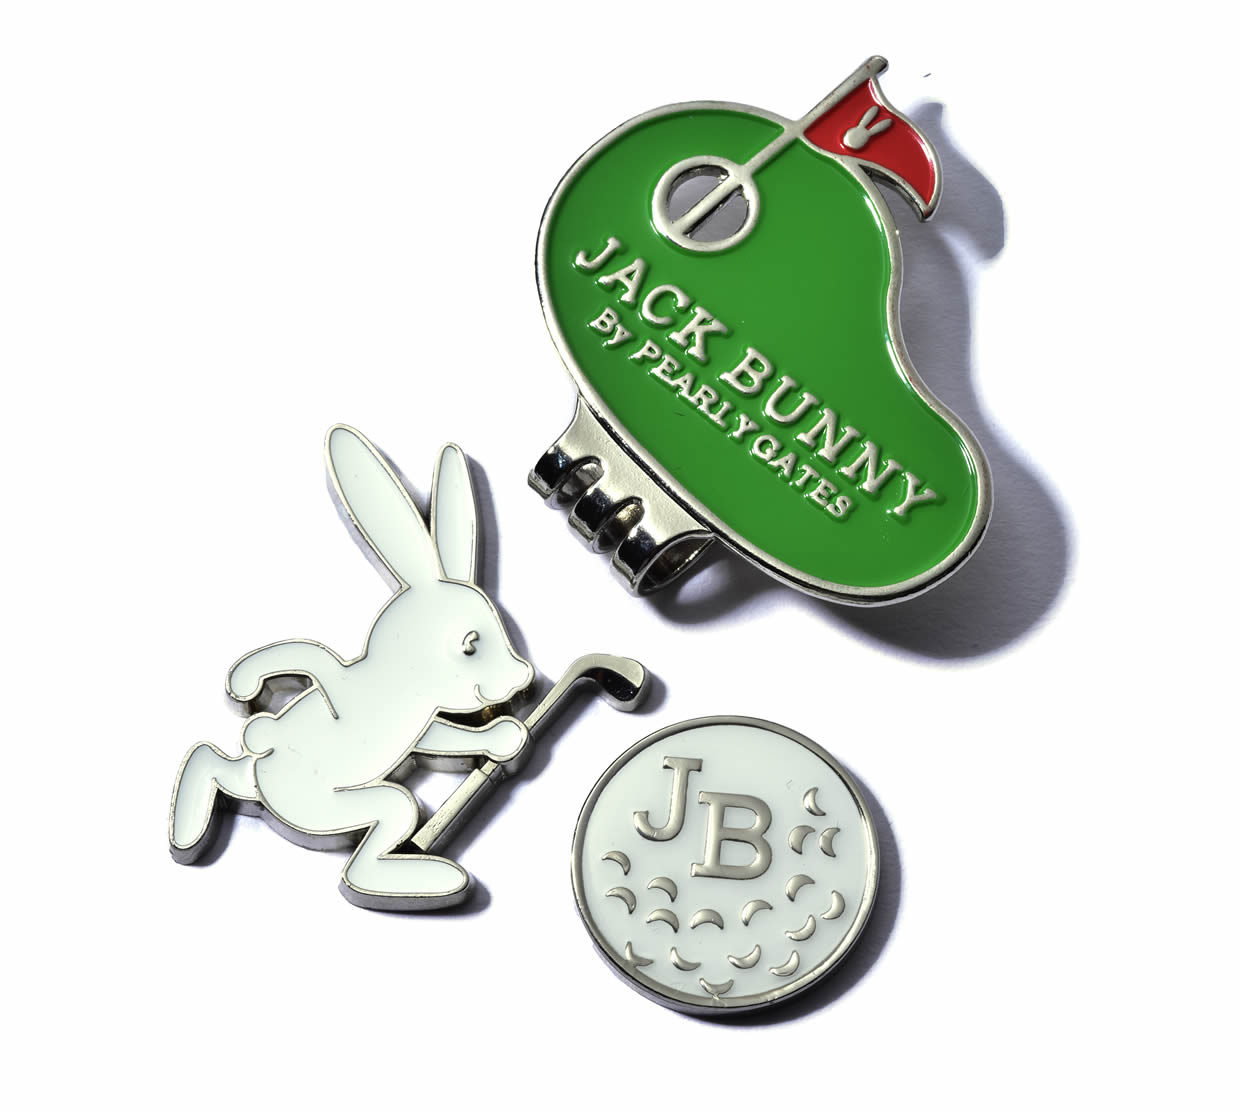 品質一番の Jack Bunny by PEARLY GATES ジャックバニー Winkラビット JBボール クリップマーカー  262-3184220 23A